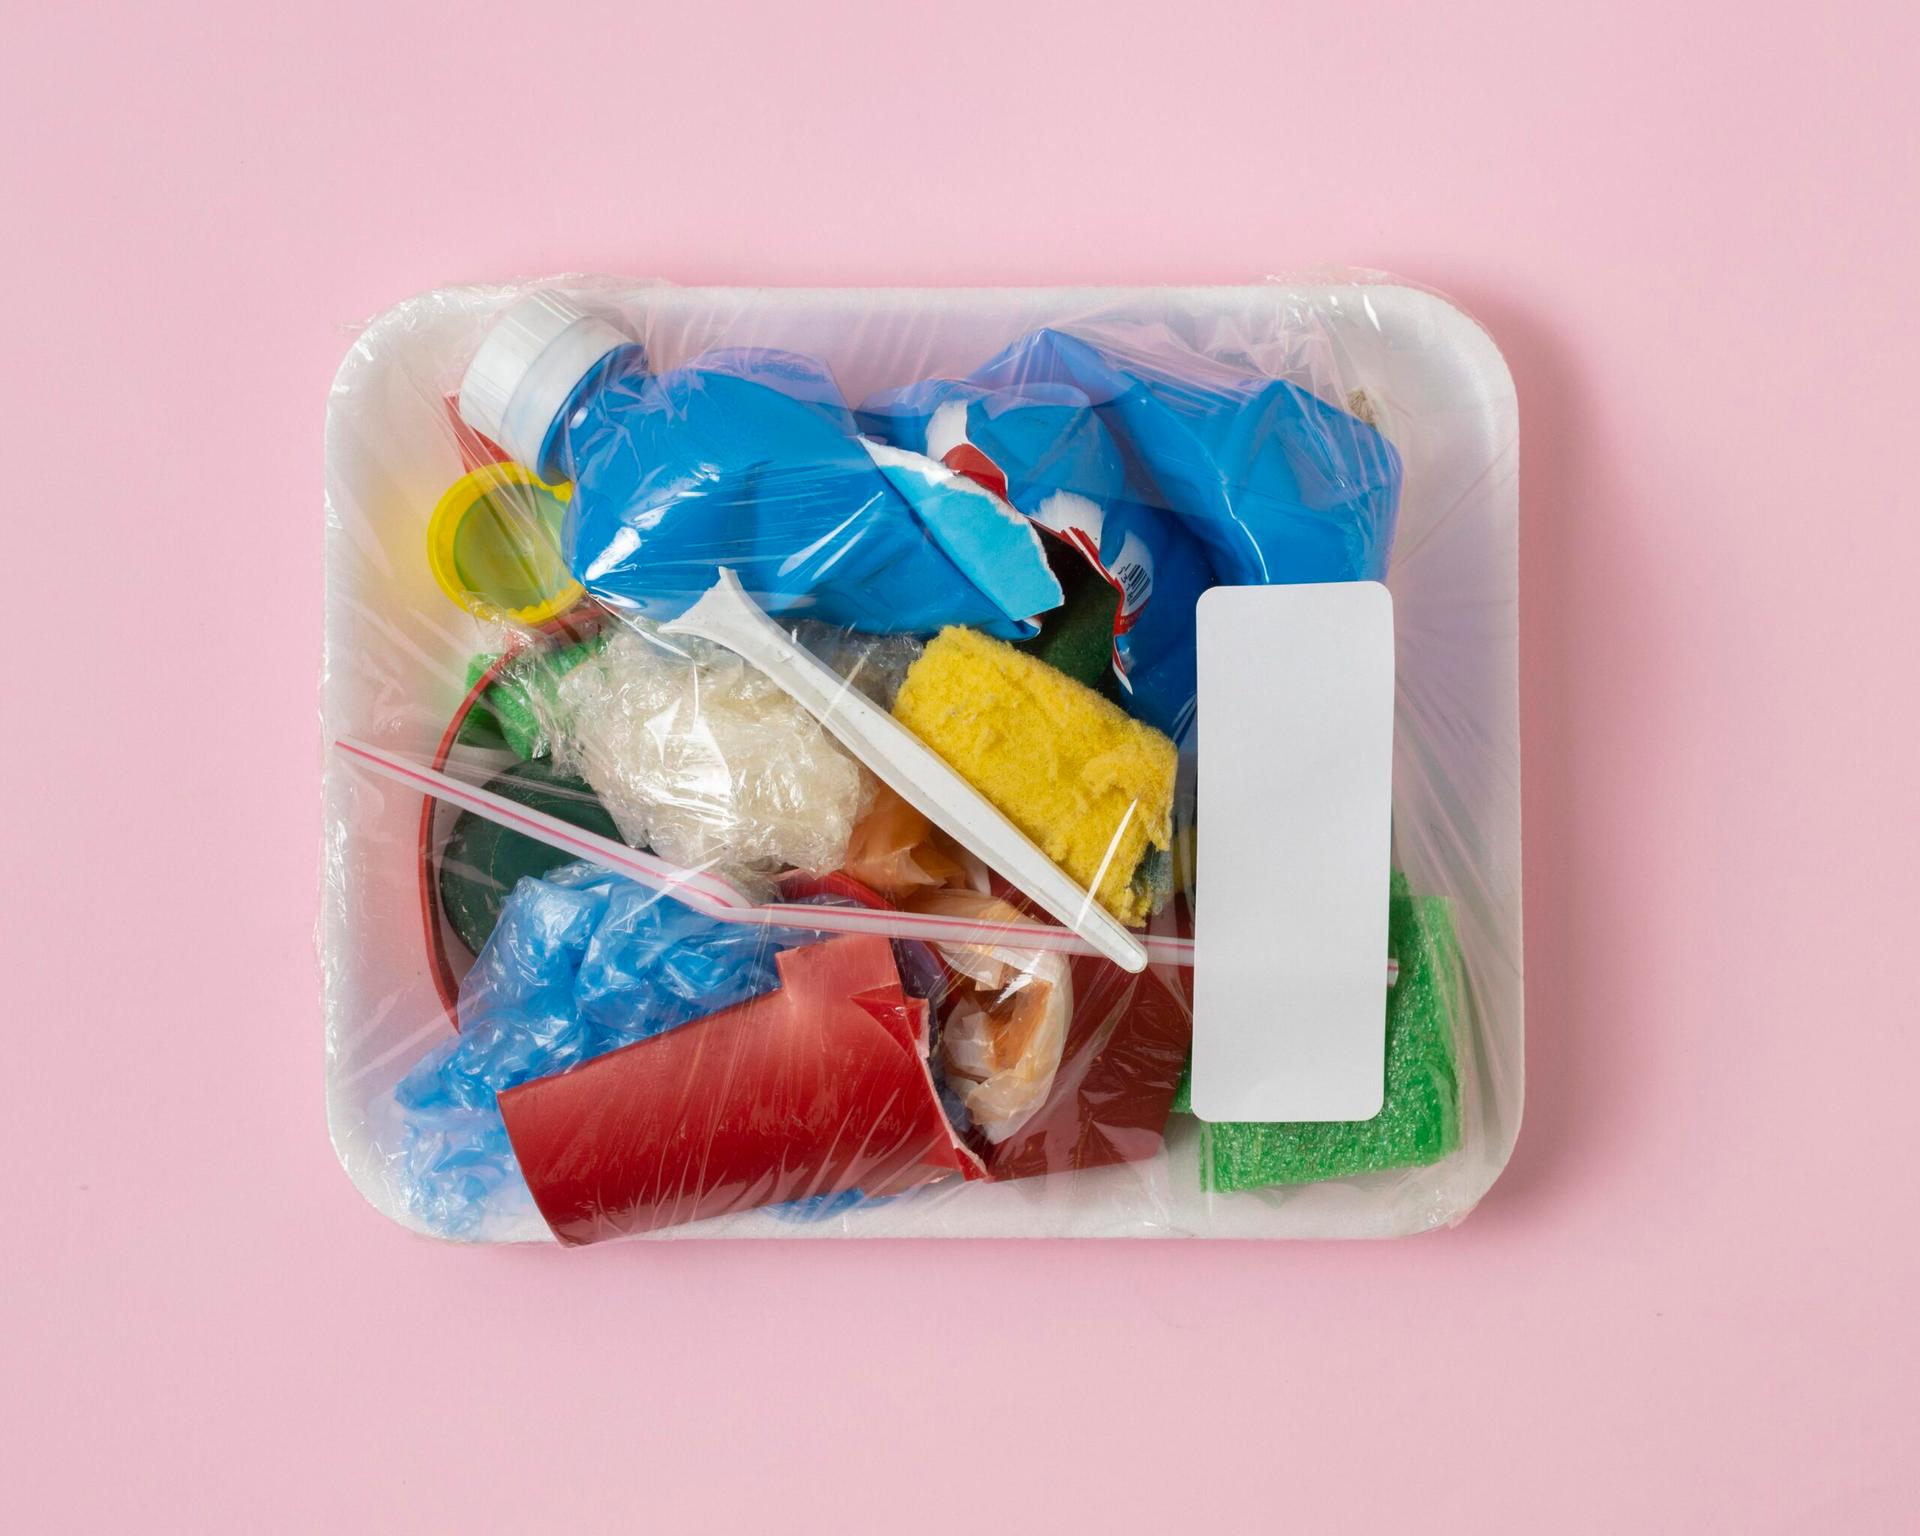 Jenis dan Bahaya Plastik yang Perlu Kita Ketahui 